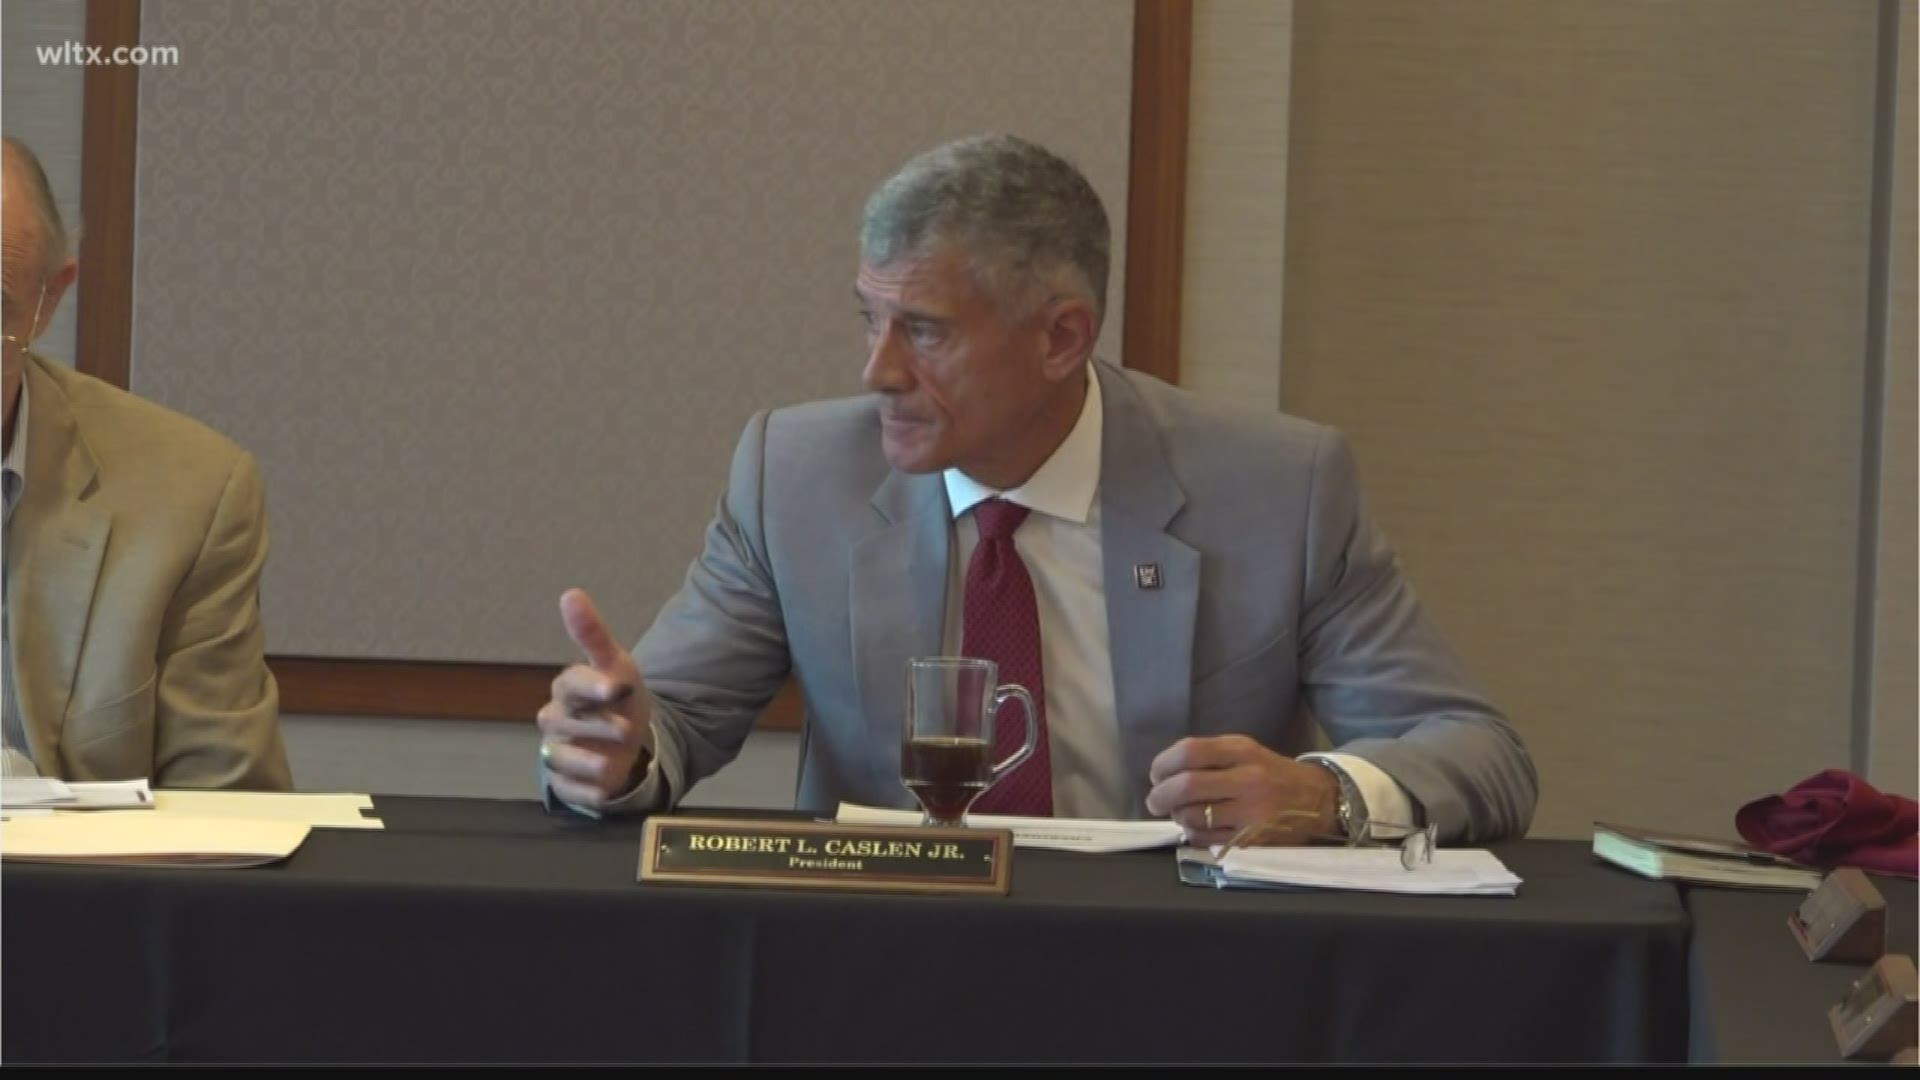 USC president Robert Caslen talks about Muschamp